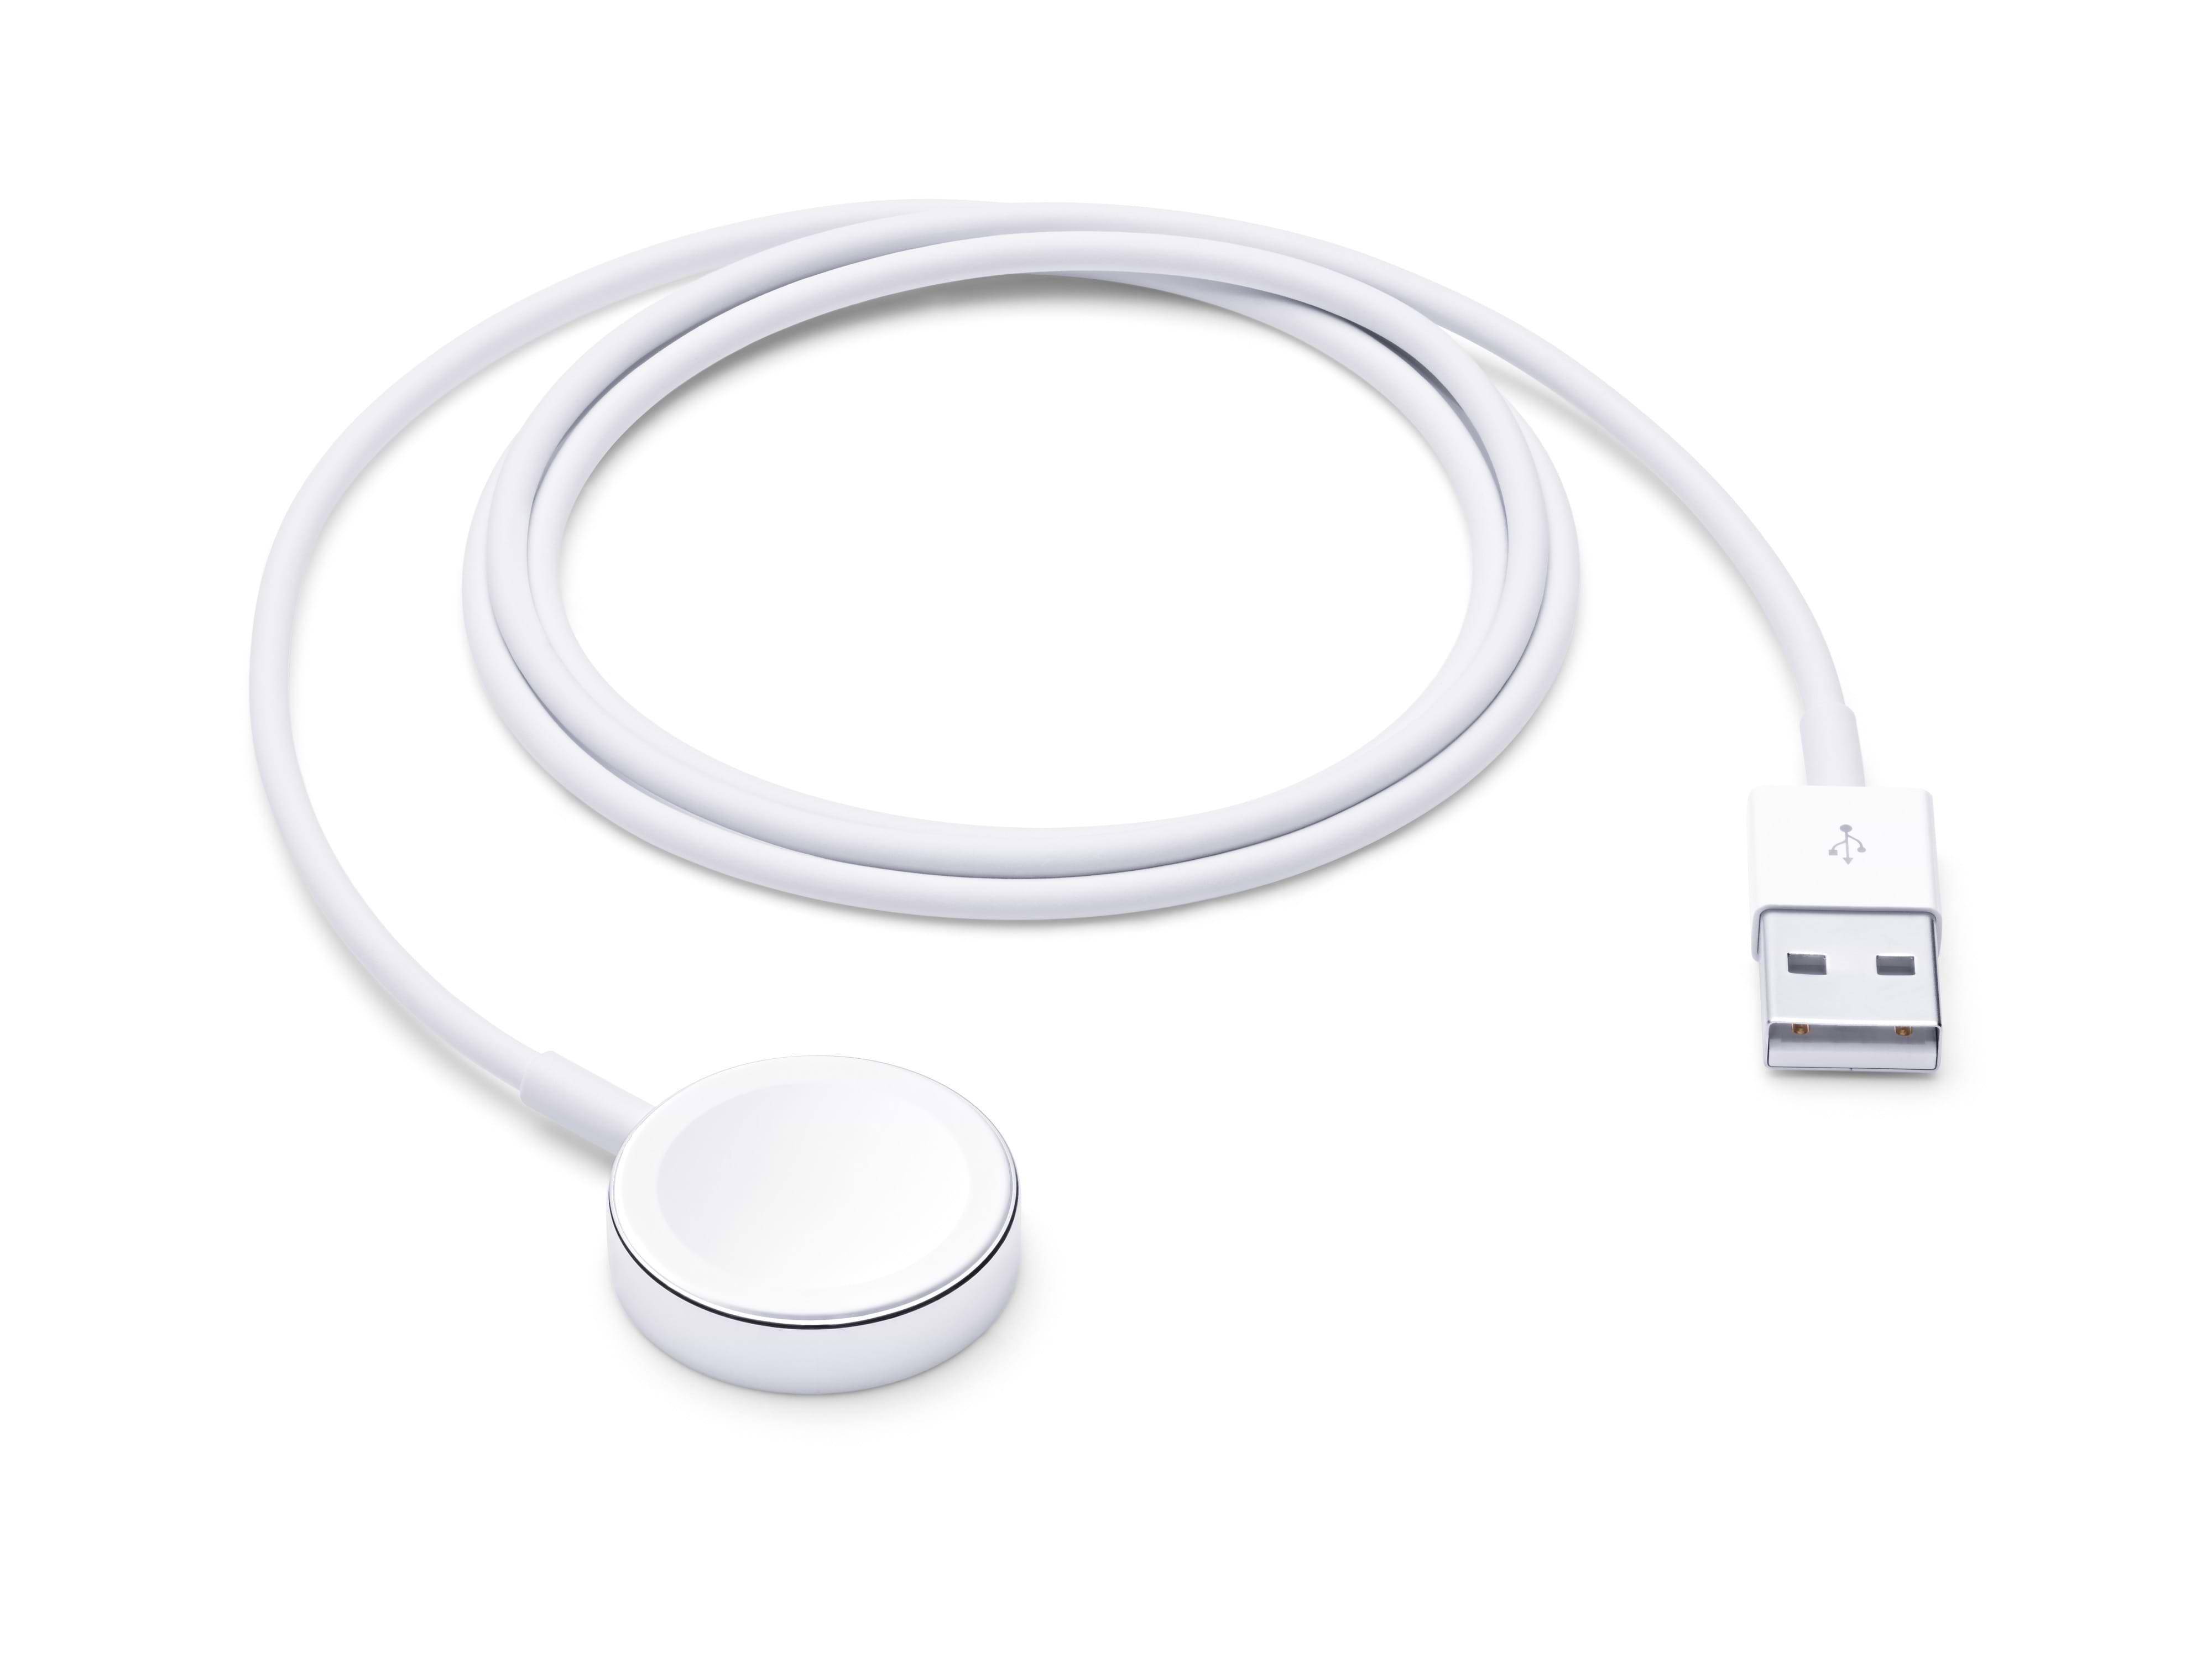  מטען אלחוטי לשעון  Apple Watch Magnetic Charging Cable באורך 1 מטר - צבע לבן שנה אחריות ע"י היבואן הרשמי